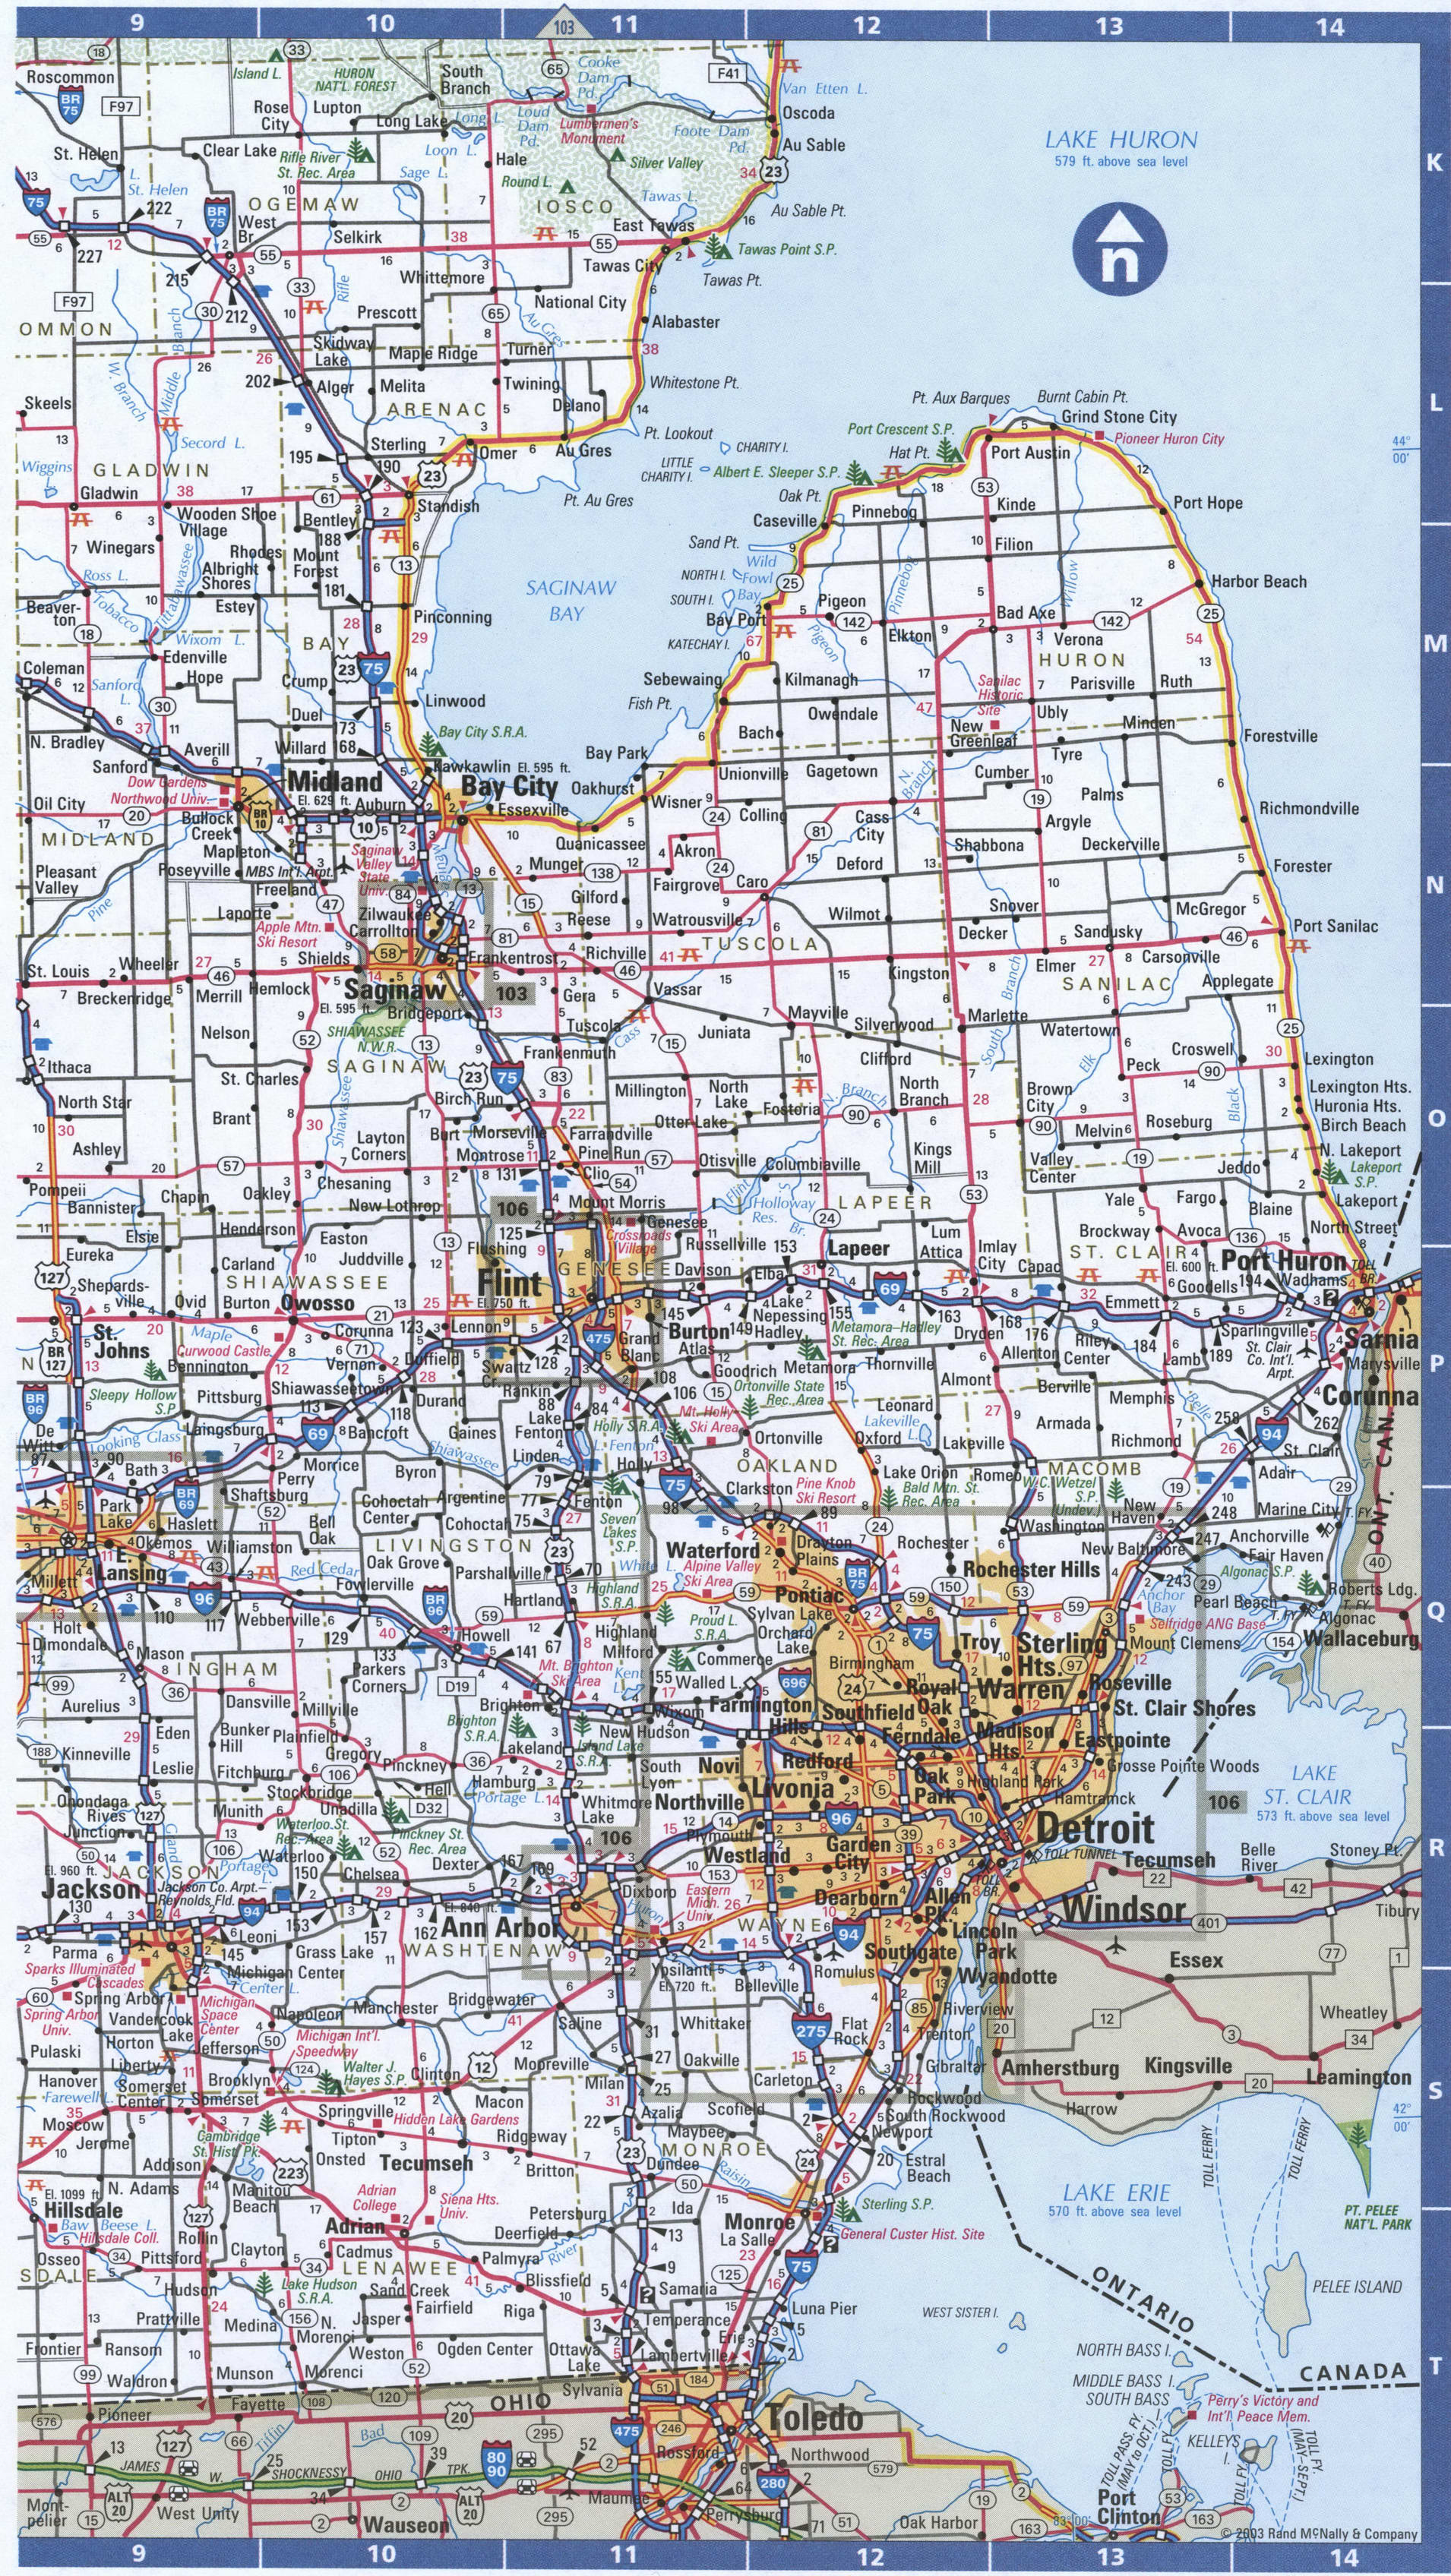 SouthEast Michigan map